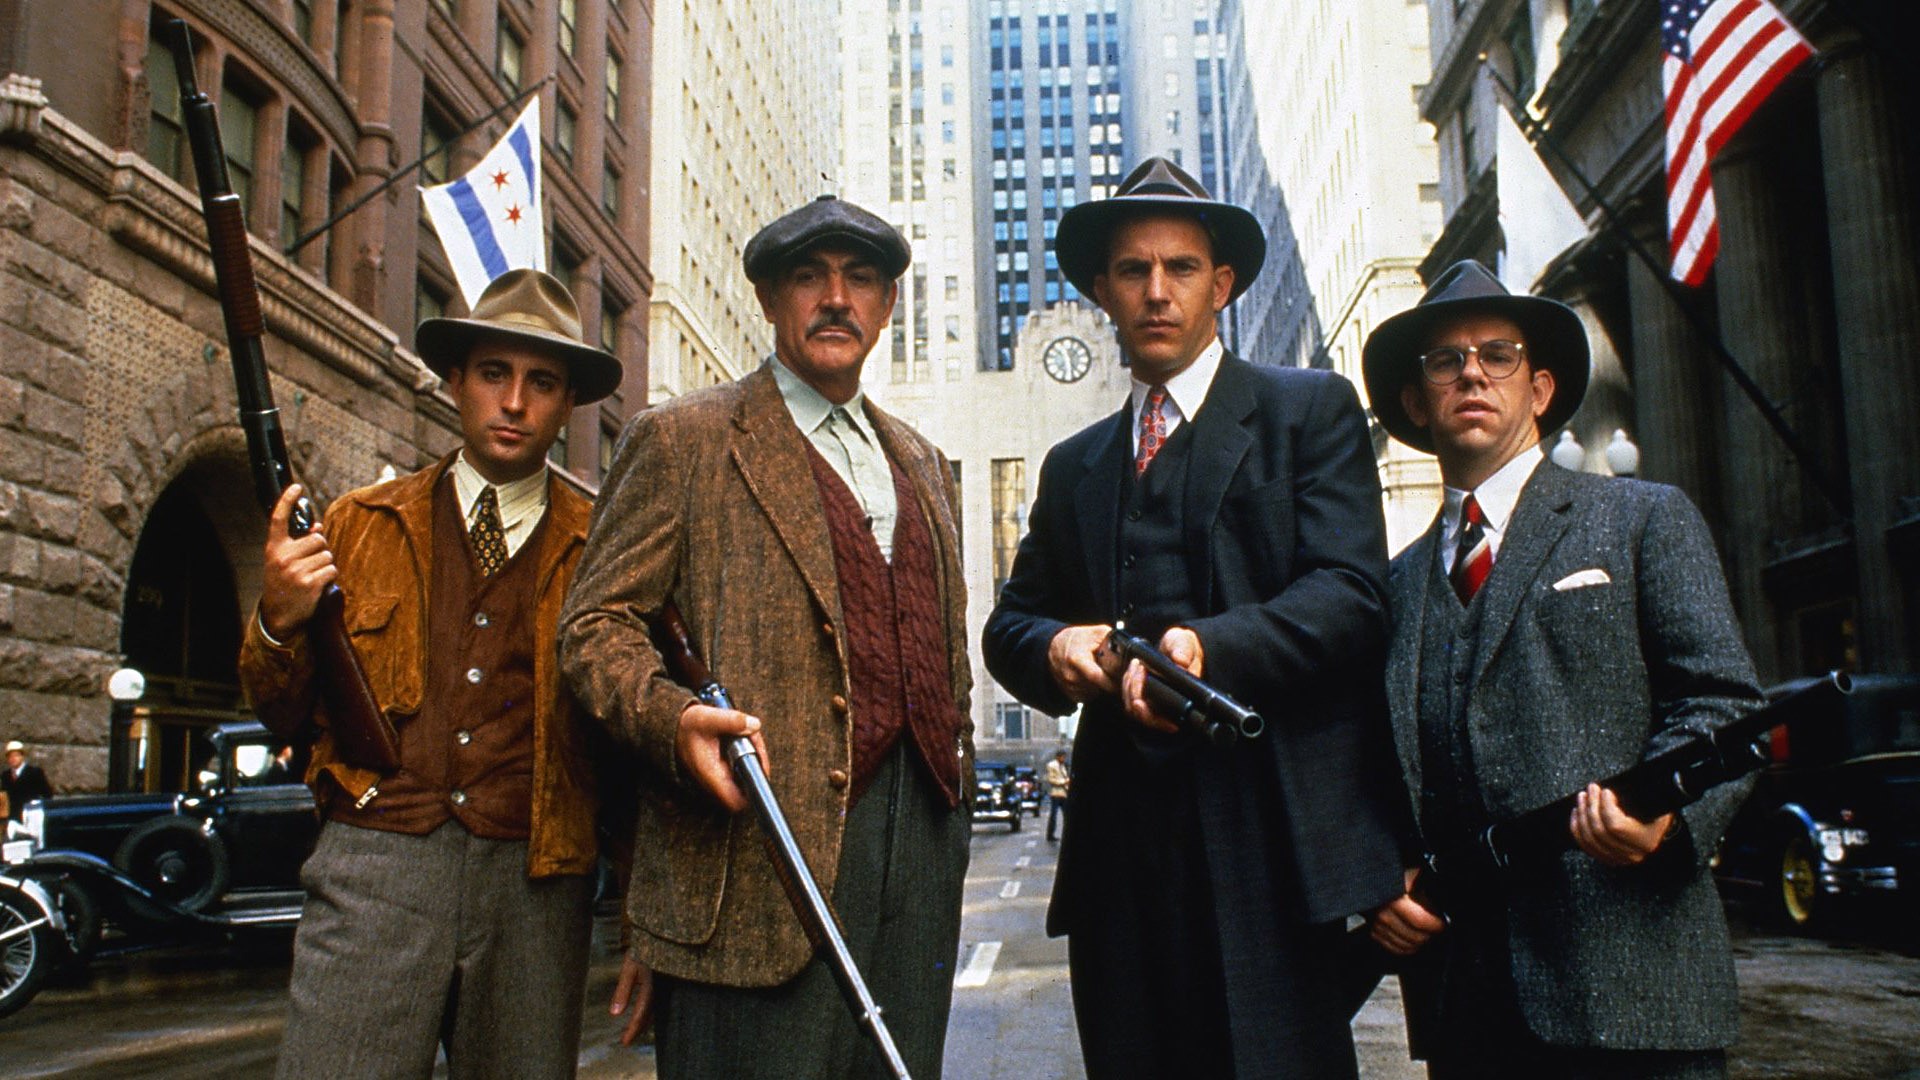 Men Actor Movies Film Stills Suits Tie Sean Connery Gun Rifles Street Chicago Vintage Looking At Vie 1920x1080